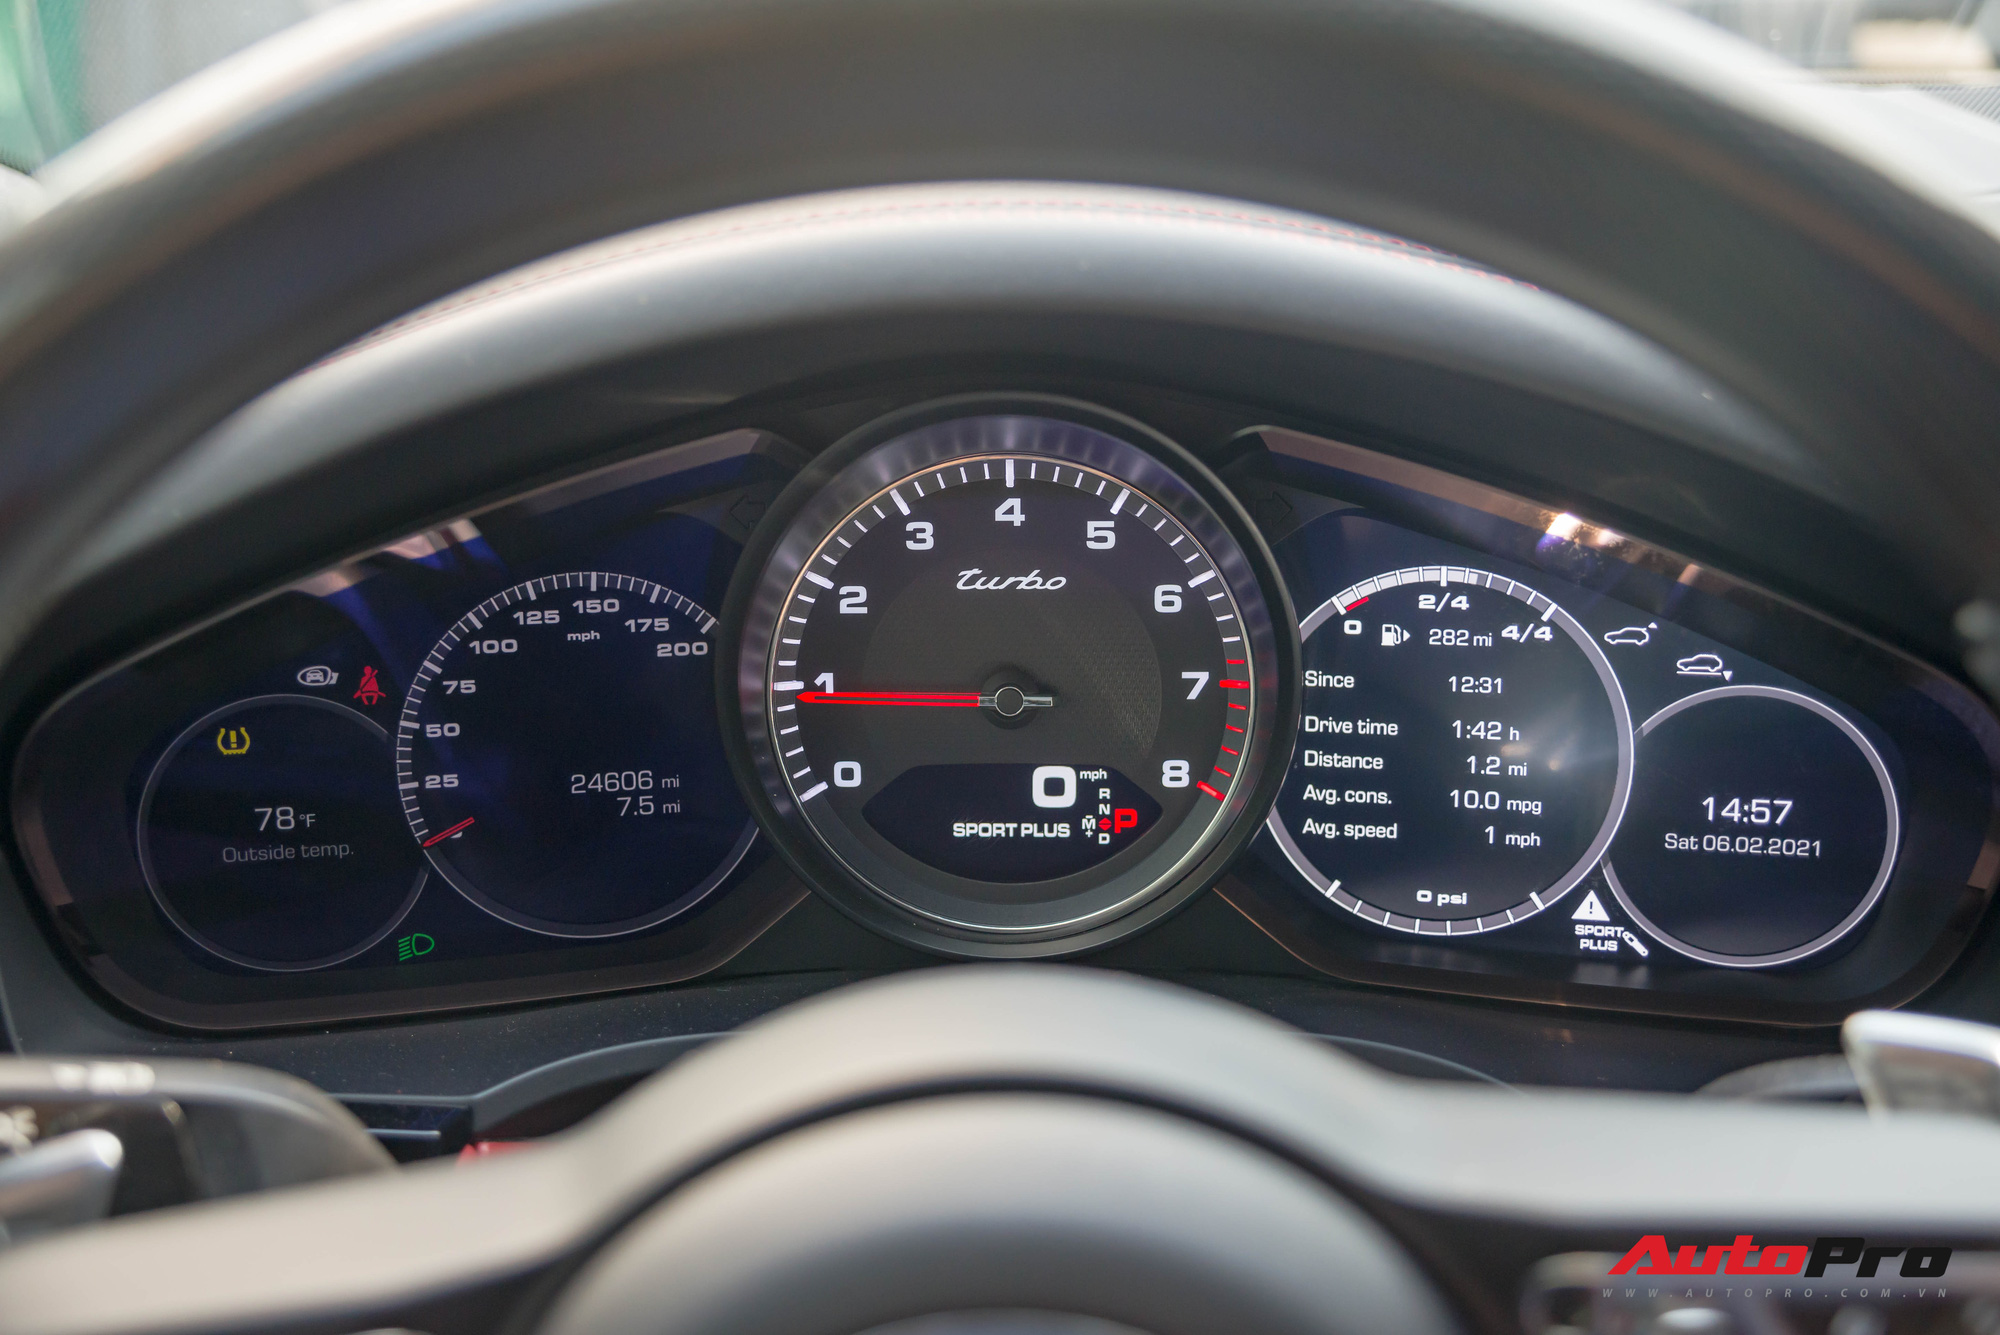 Ngắm Porsche Cayenne Turbo 2020 vừa về Việt Nam: SUV giá hơn 10 tỷ đồng cho đại gia thích tốc độ - Ảnh 6.